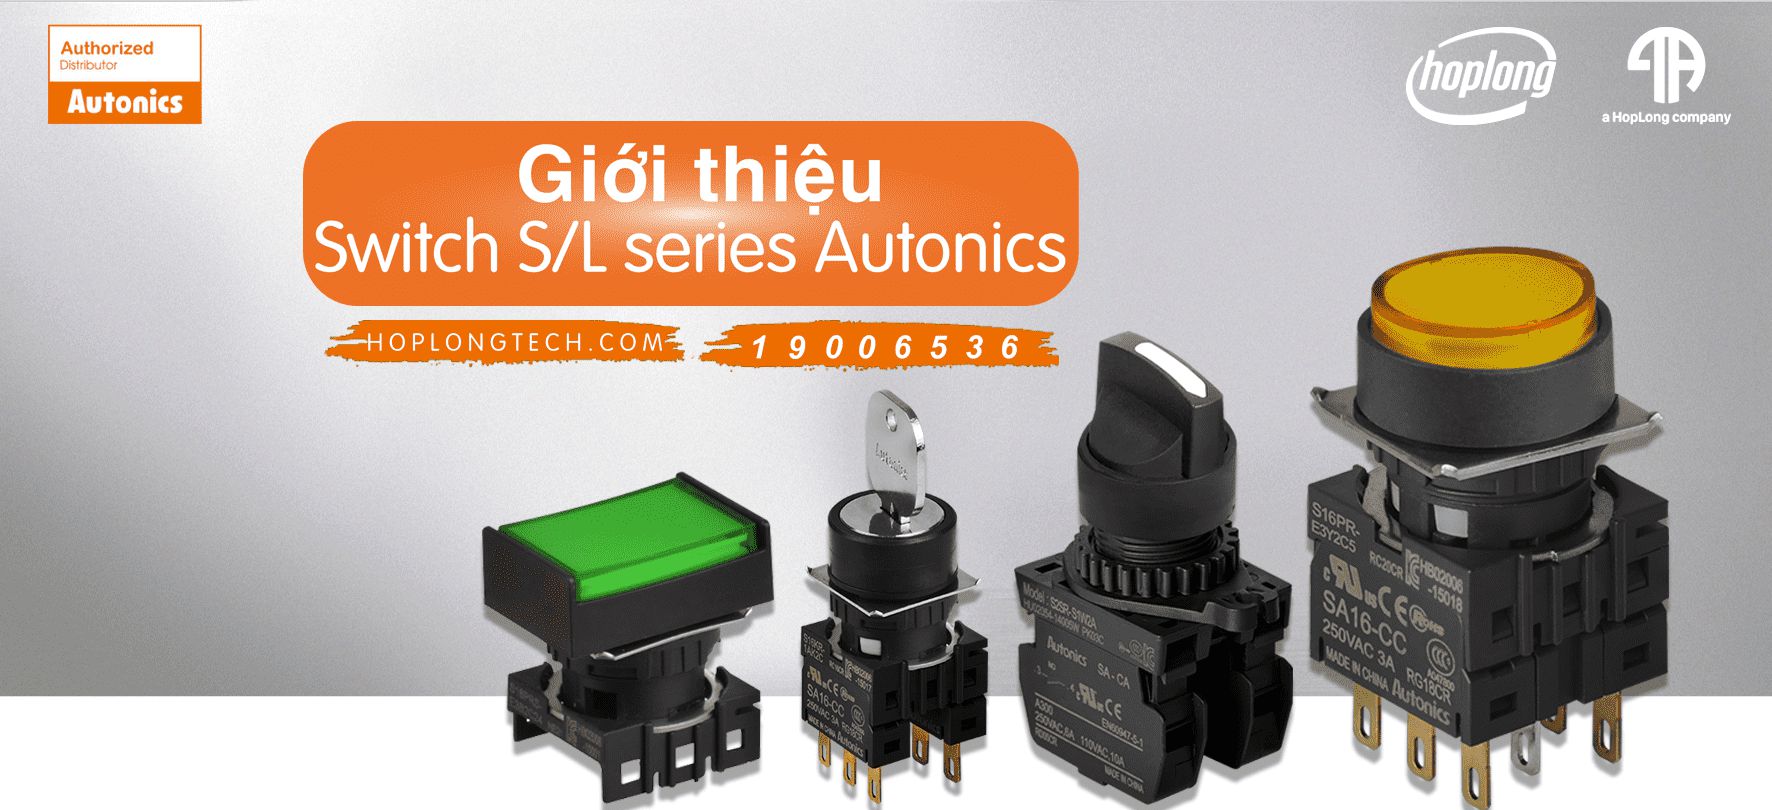 Giới thiệu Switch S/L series Autonics giá tốt nhất - Hợp Long